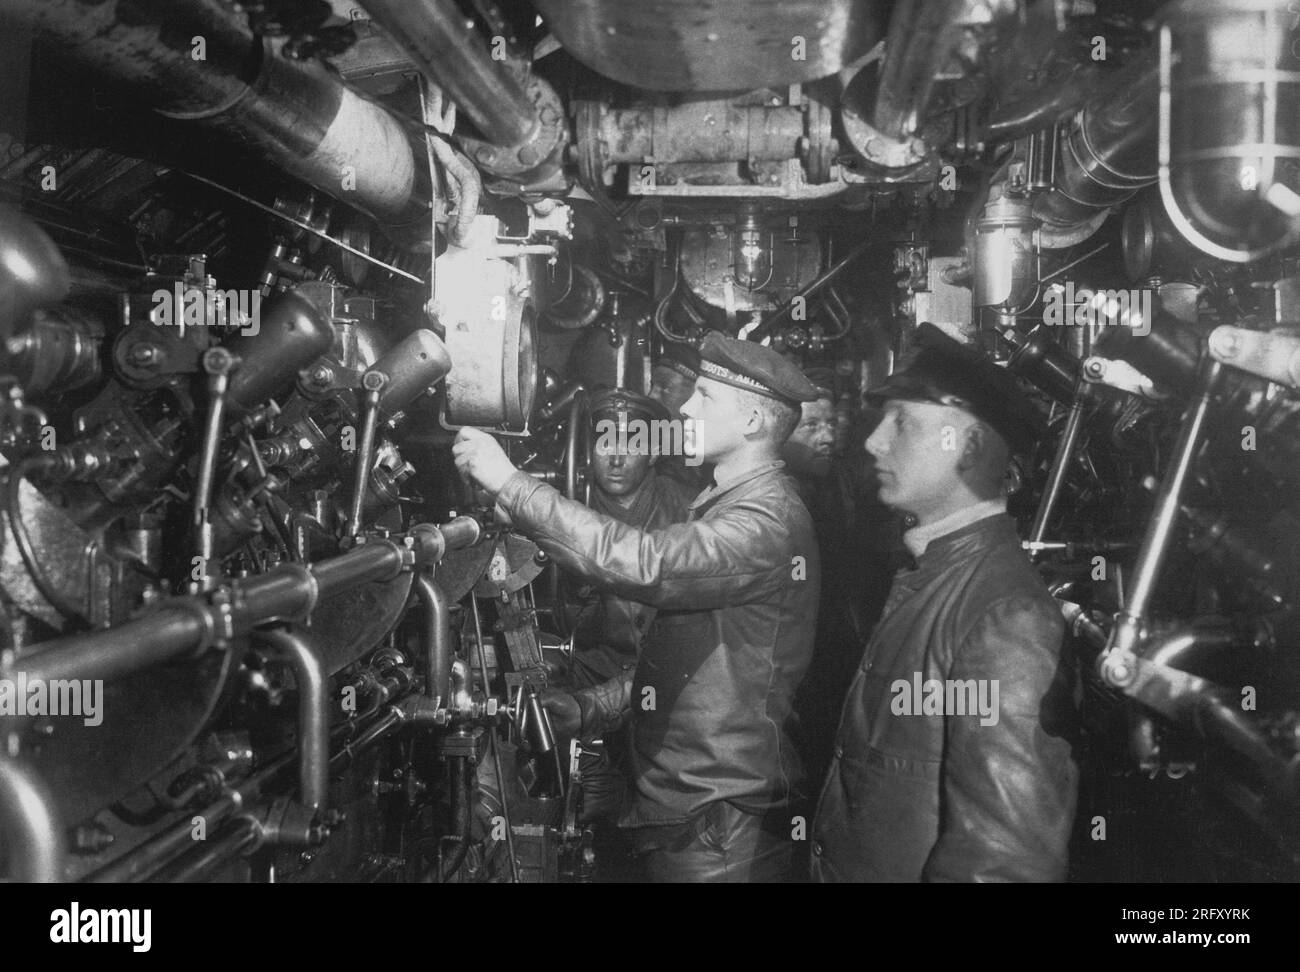 OCÉAN ATLANTIQUE - circa 1918 - salle des machines d'un sous-marin allemand à mazout (U-Boat). Ceux-ci ont été utilisés avec des effets dévastateurs sur la navigation alliée dans Banque D'Images